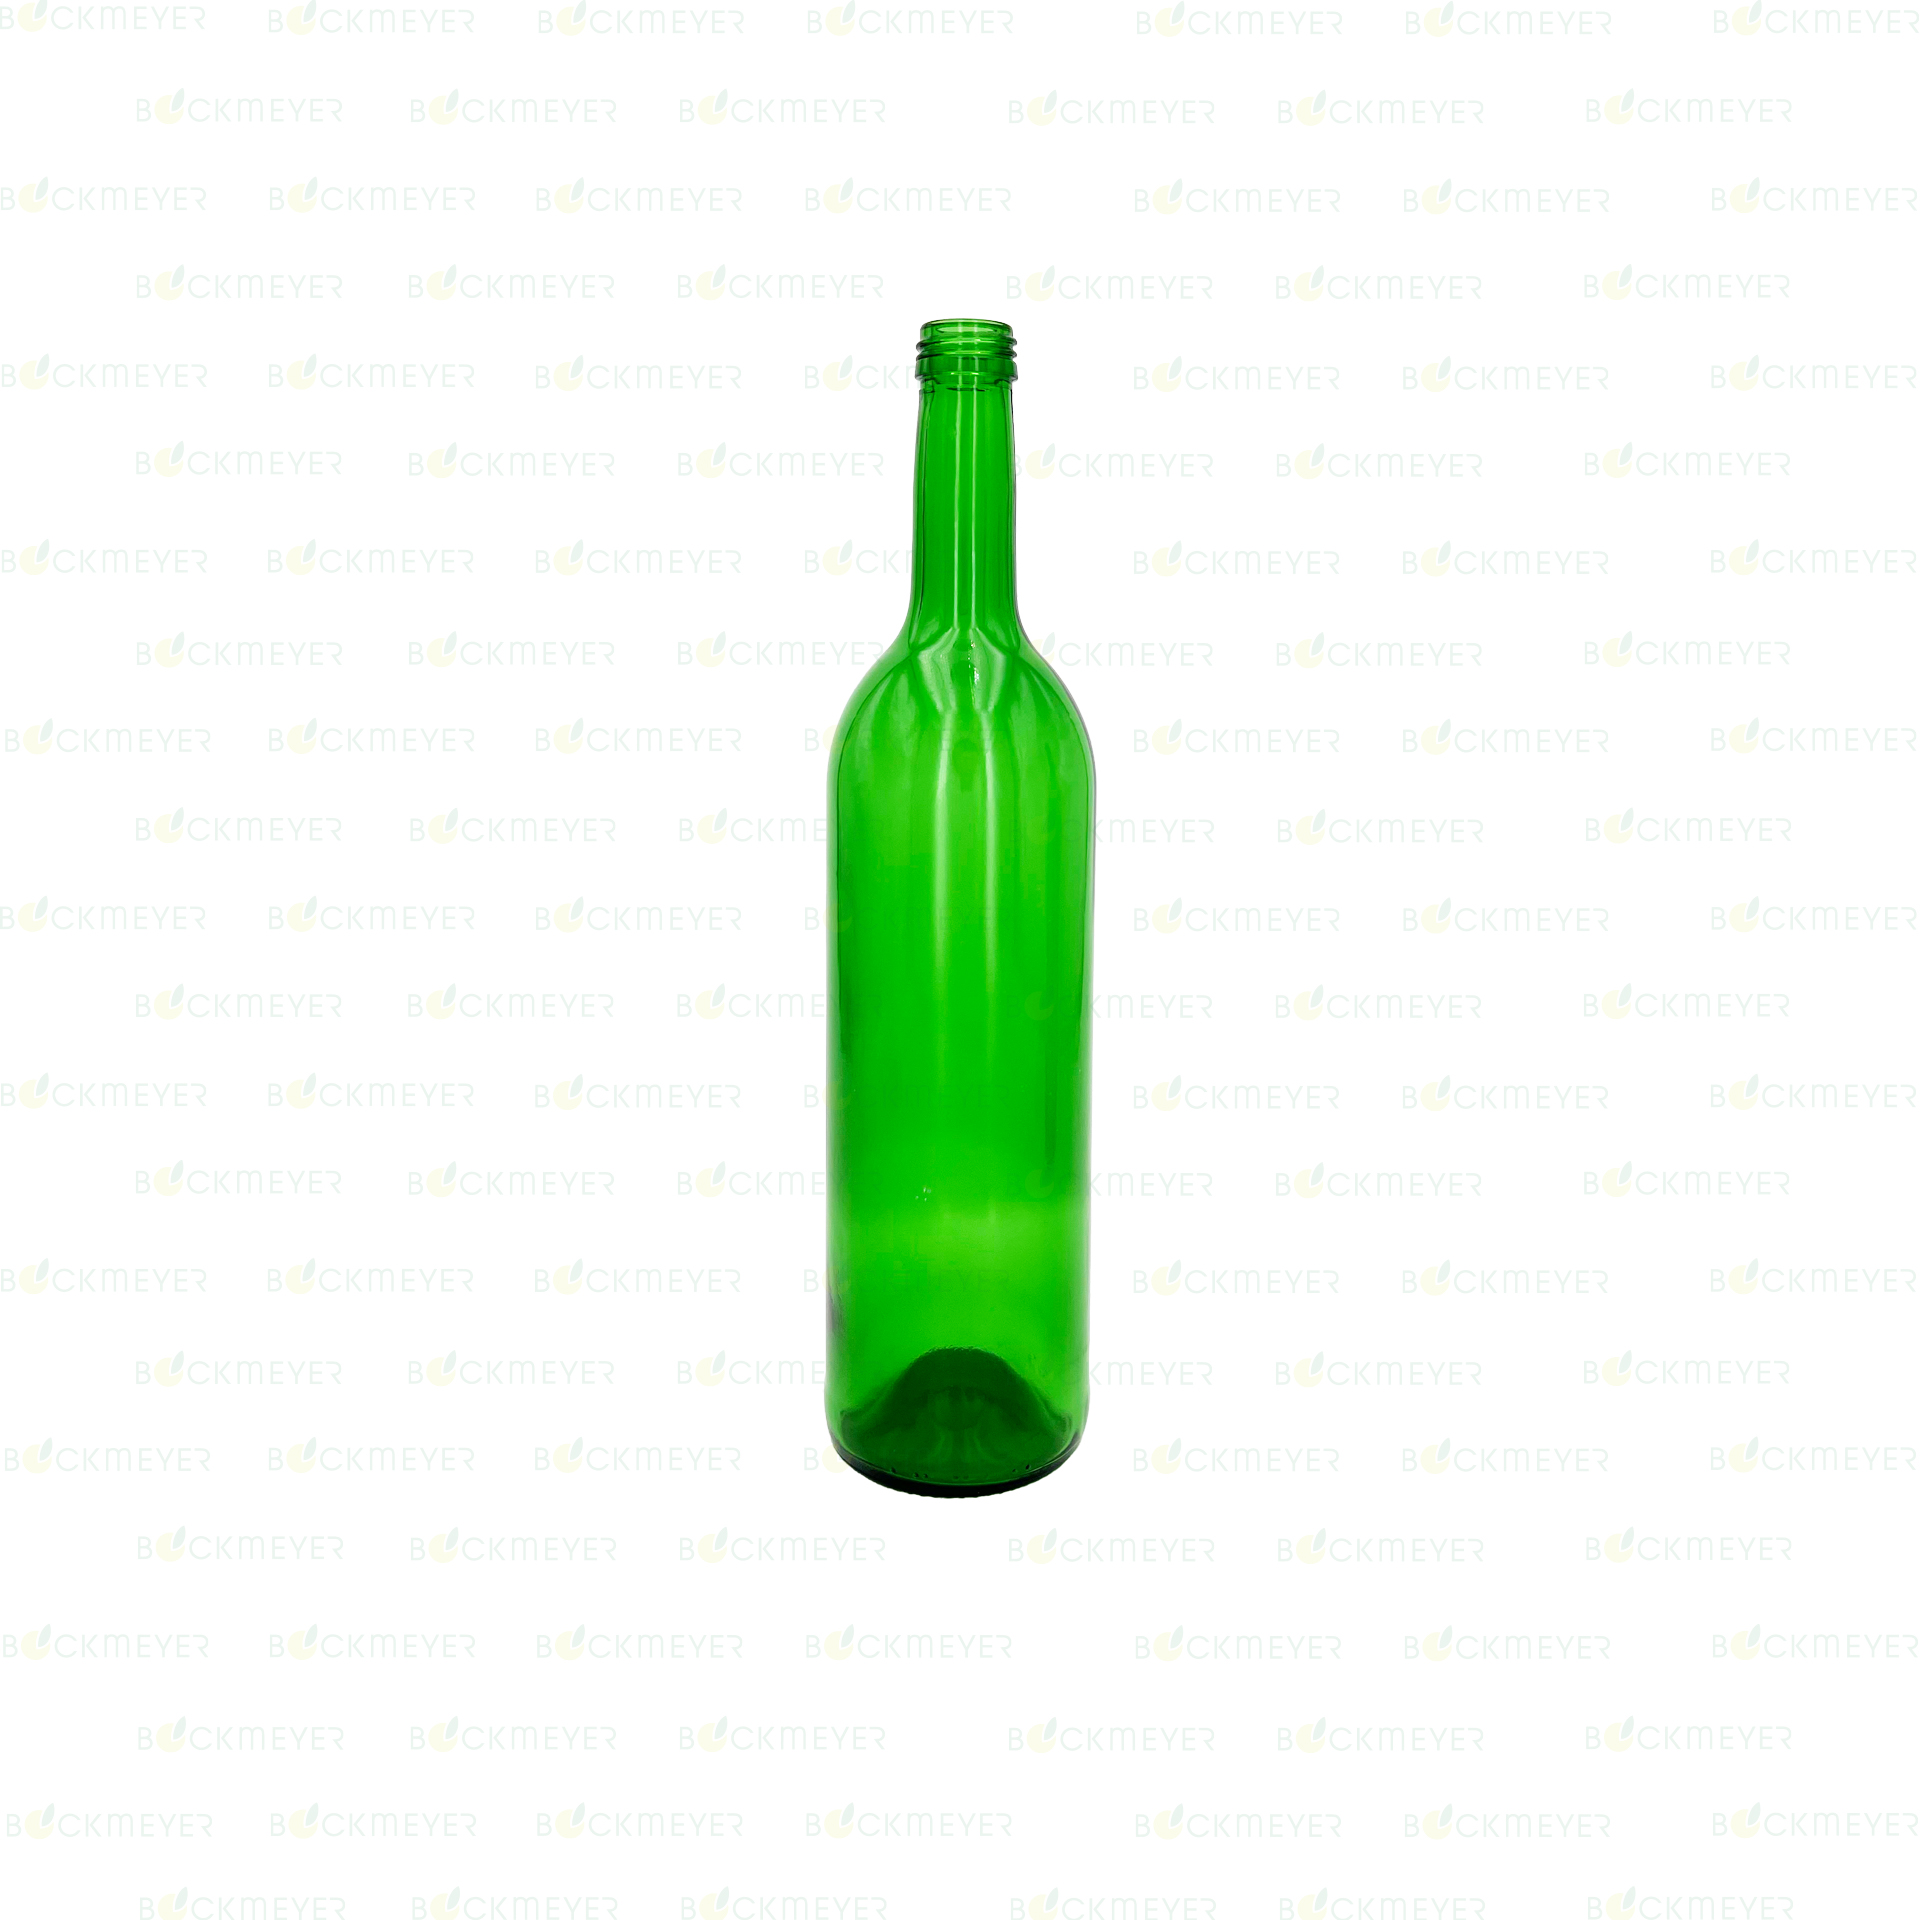 Weinflasche Bordeaux 0,75 Liter, grün (28 MCA) (OHNE VERSCHLUSS)